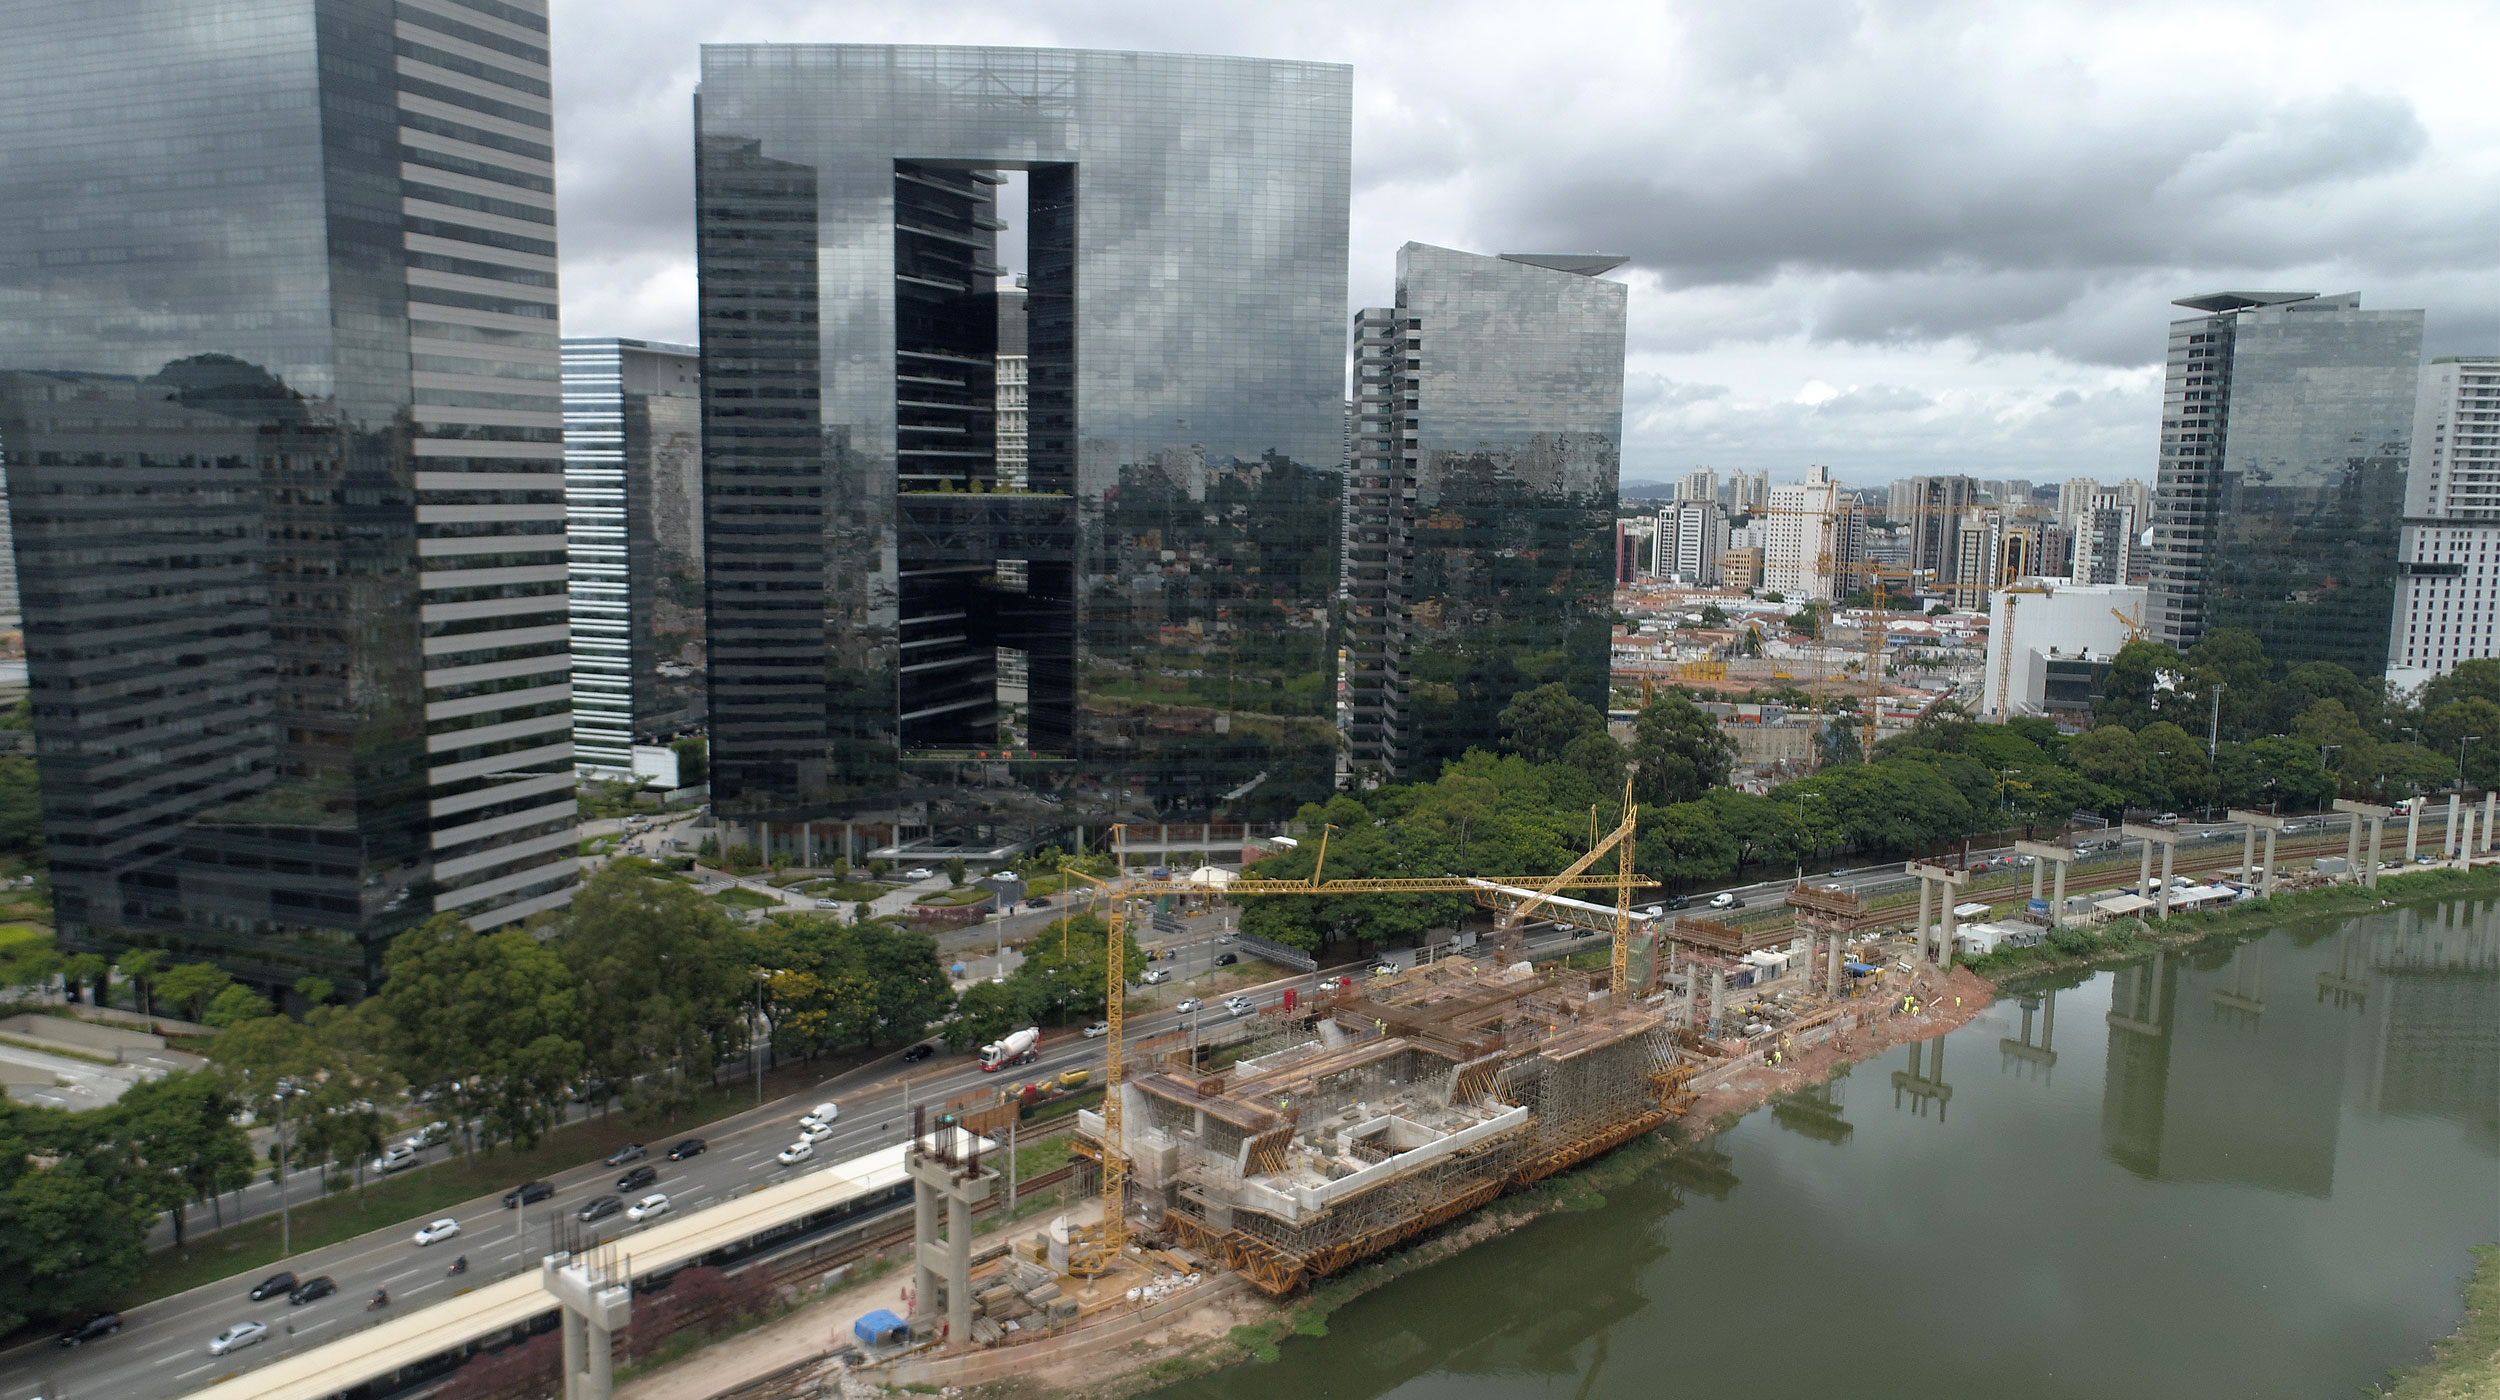 La estación Morumbi situada al sur de São Paulo conectará el Aeropuerto de Congonhas con el distrito de Morumbi. Es uno de los grandes proyectos de movilidad urbana de la ciudad.